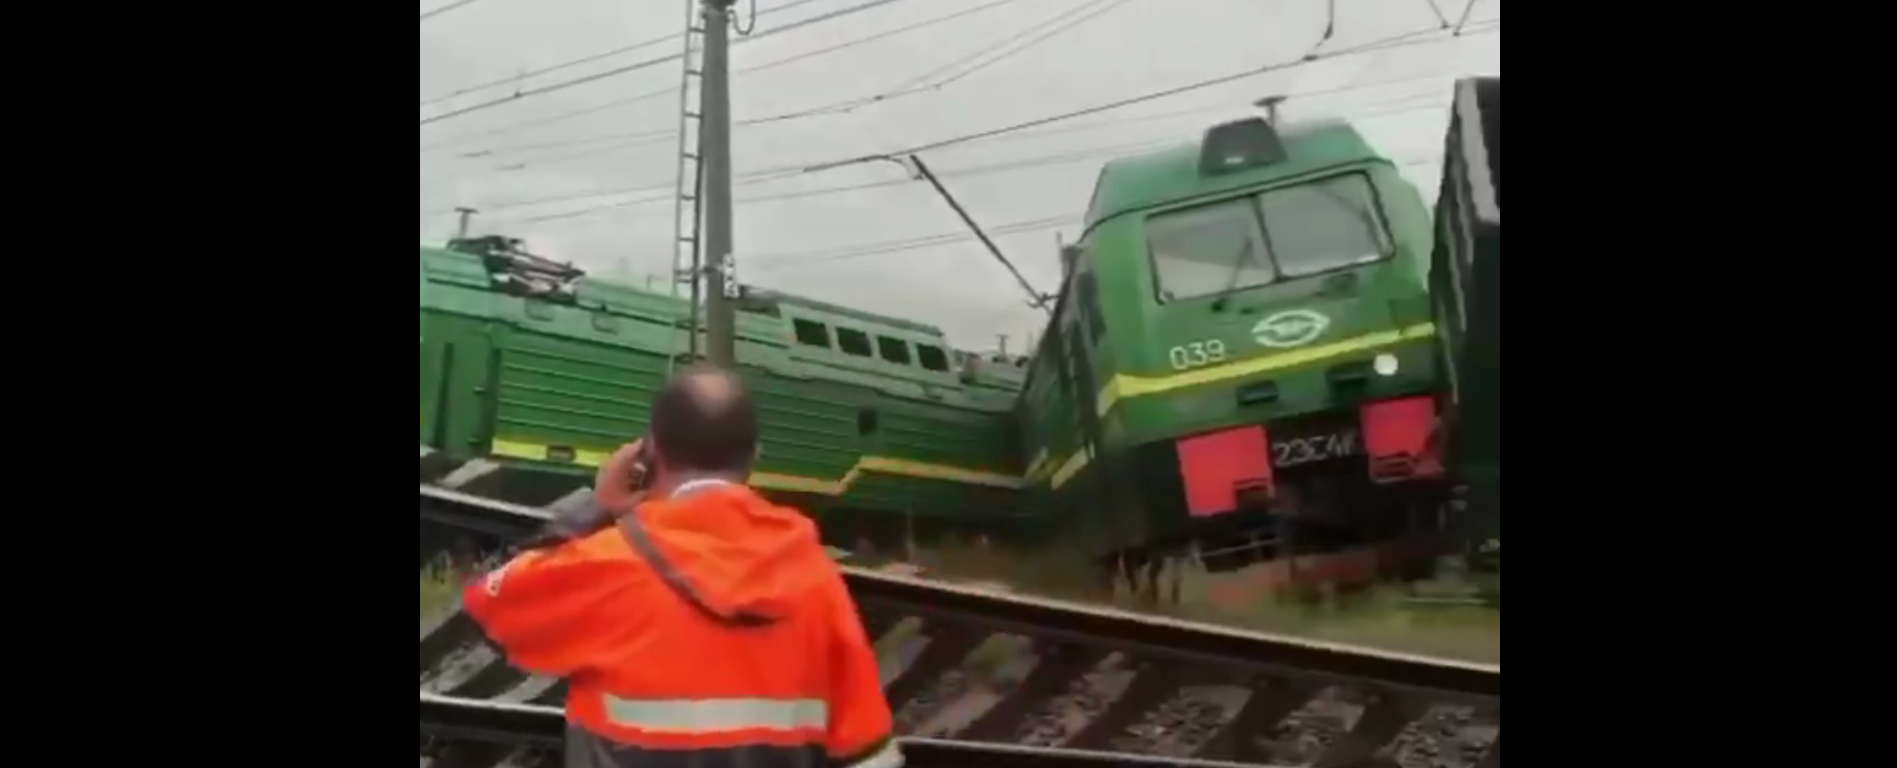 В Петербурге столкнулись два грузовых ж/д состава: поезда сошли с рельс